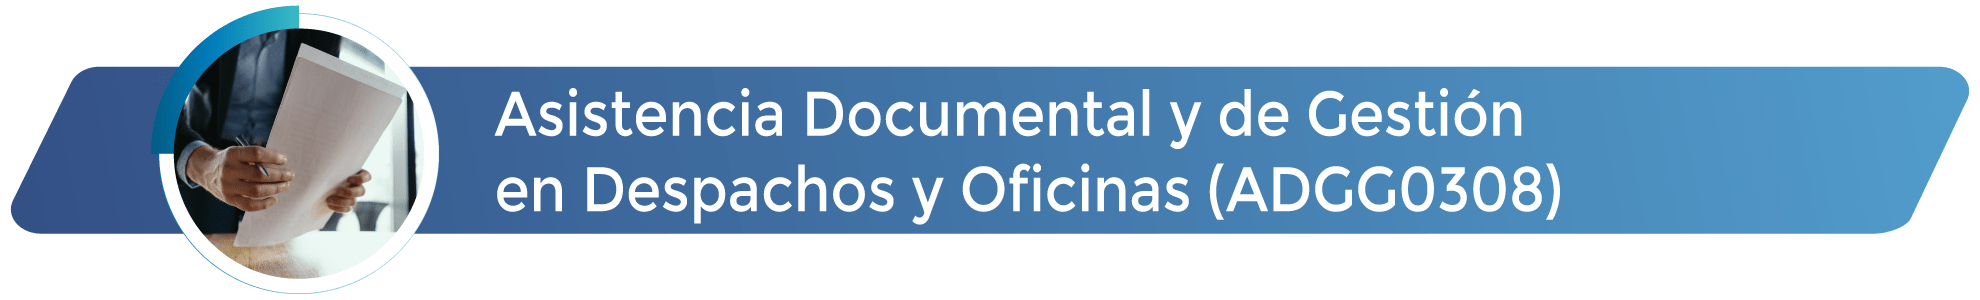 ADGG0308 - Asistencia Documental y de Gestión en Despachos y Oficinas